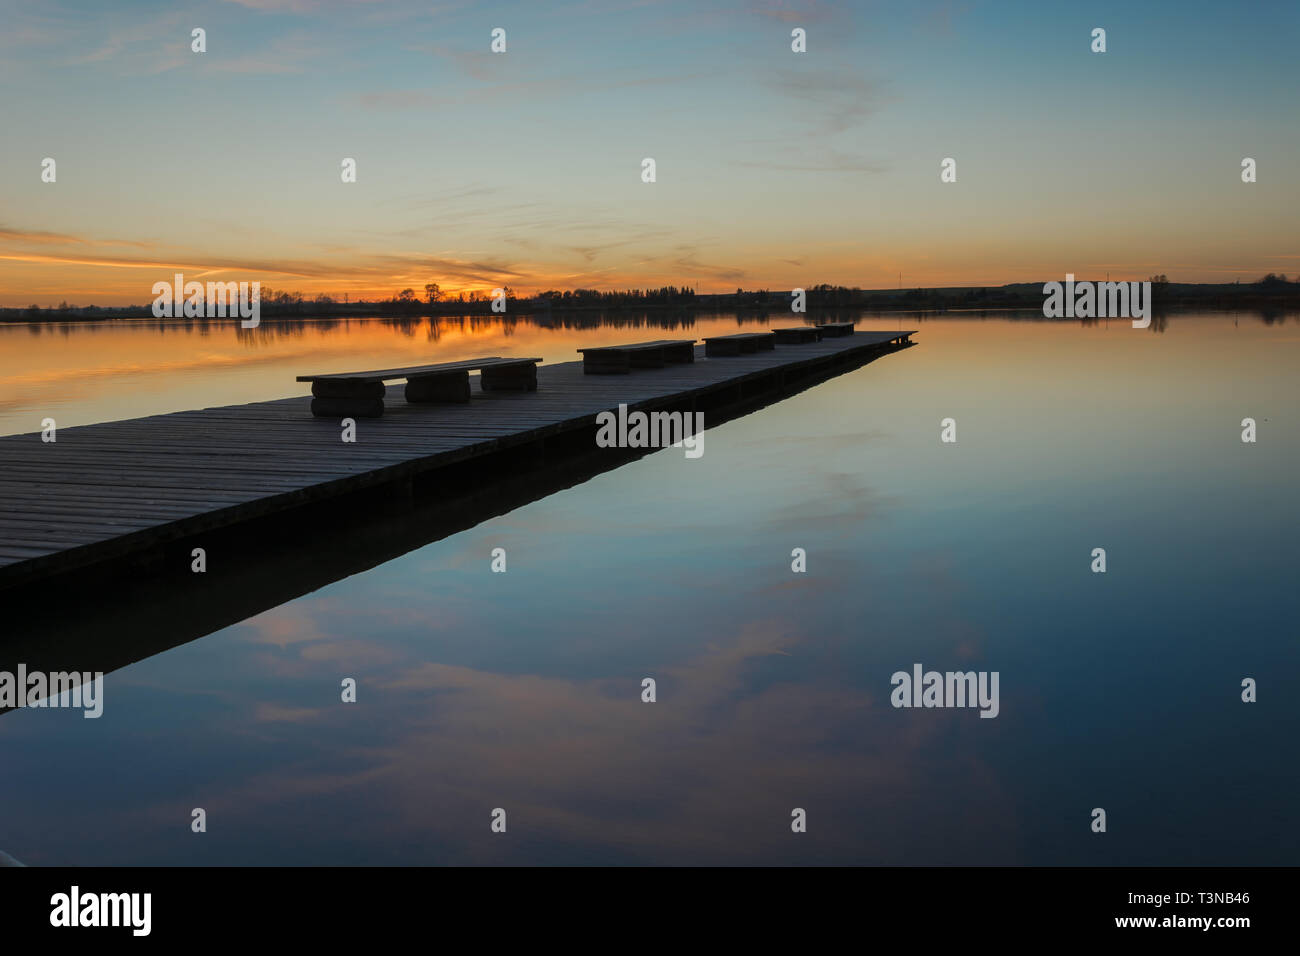 Eine lange Brücke mit Bänken, ein Sonnenuntergang und ein ruhiger See - abend Schönheit anzeigen Stockfoto